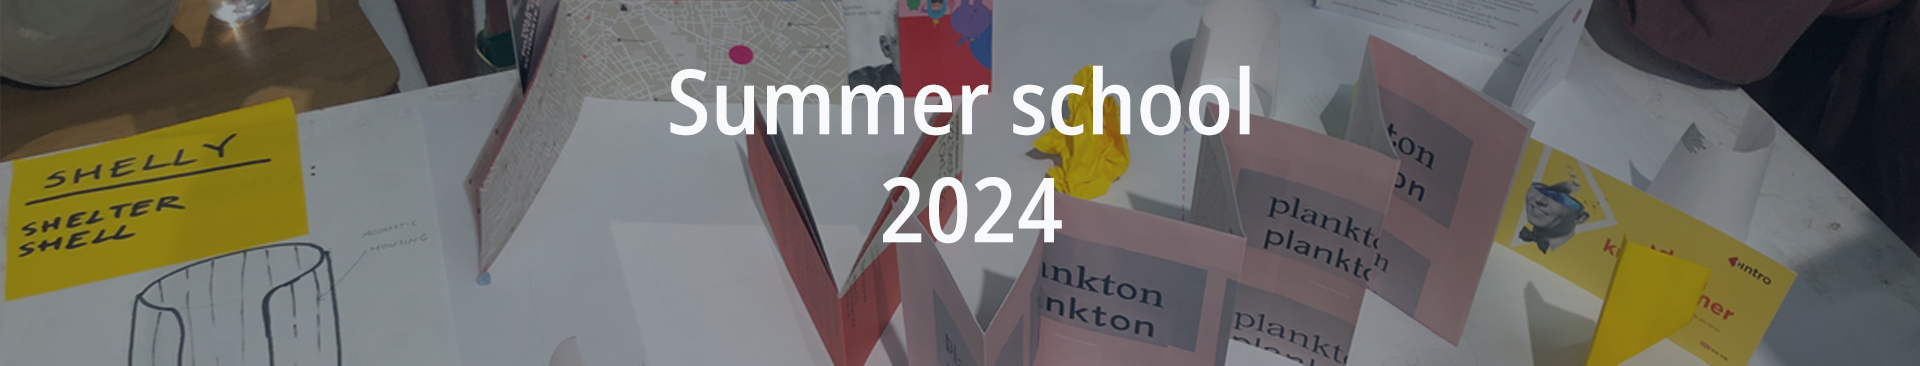 IIID Summer School 2024